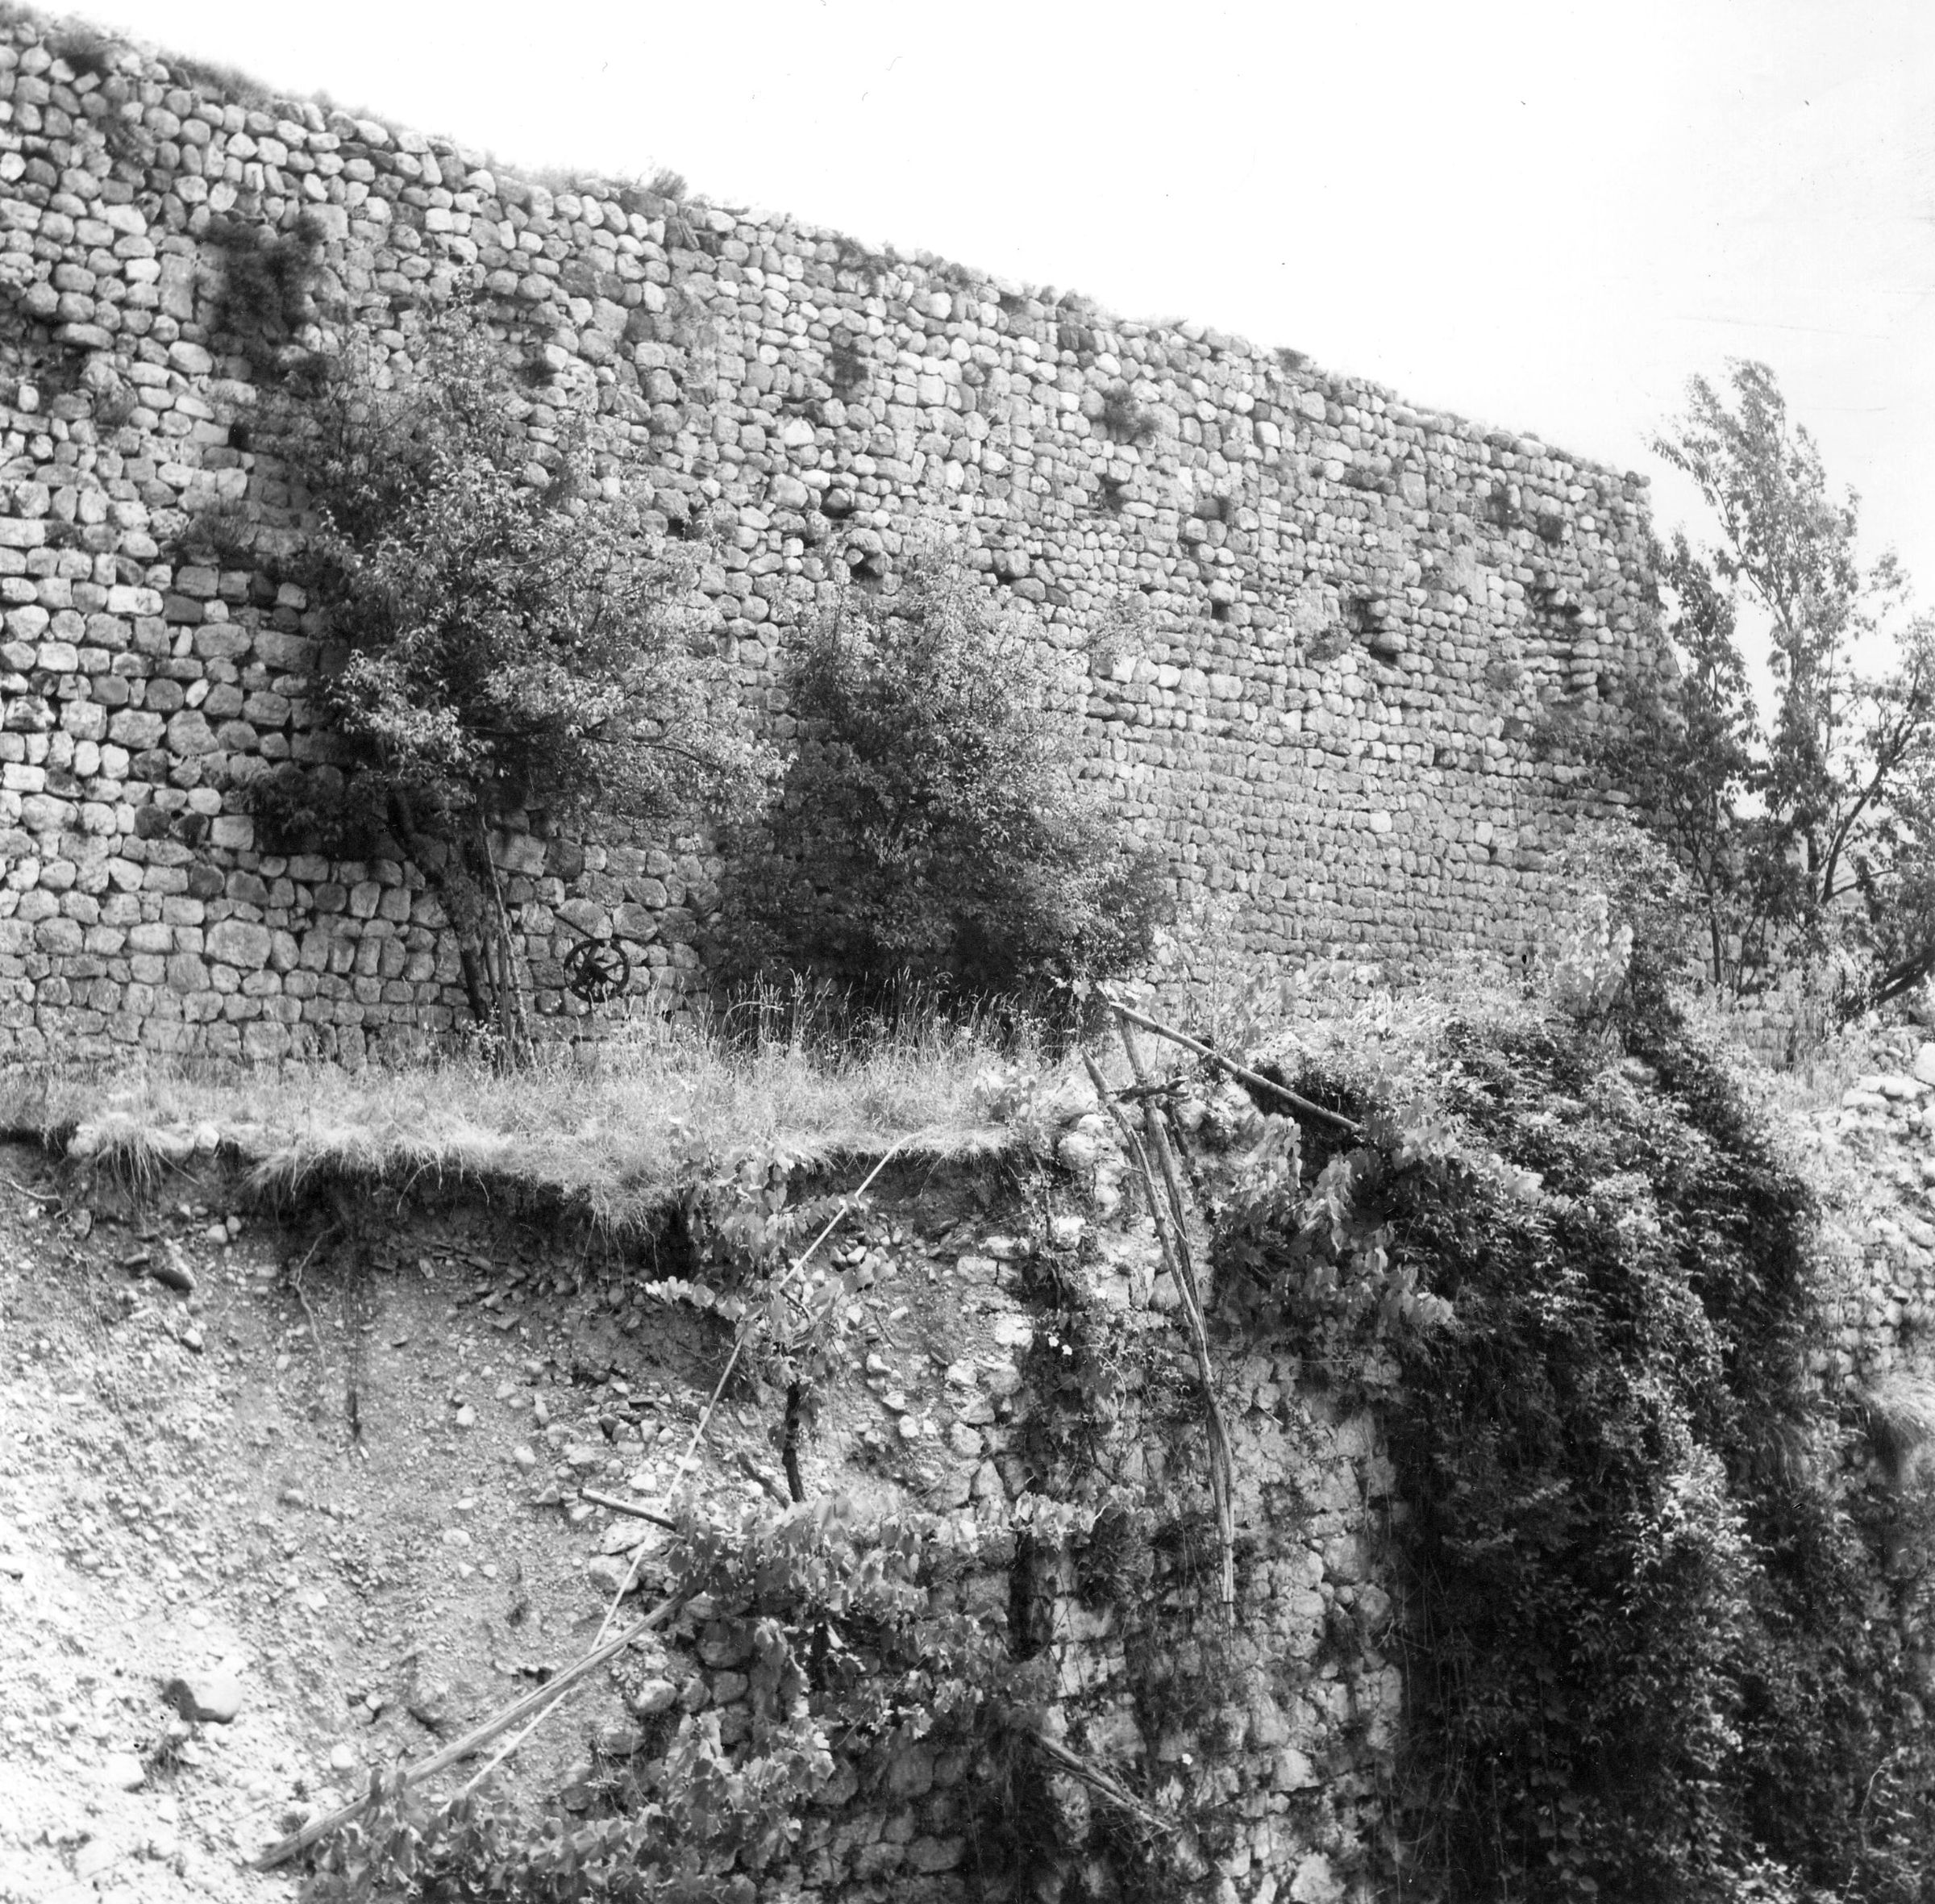 Fotografo non identificato, Venzone - Terremoto, cinta muraria, vista di dettaglio, esterno, 1976, gelatina ai sali d'argento/pellicola (acetati), 6x6cm, N032515